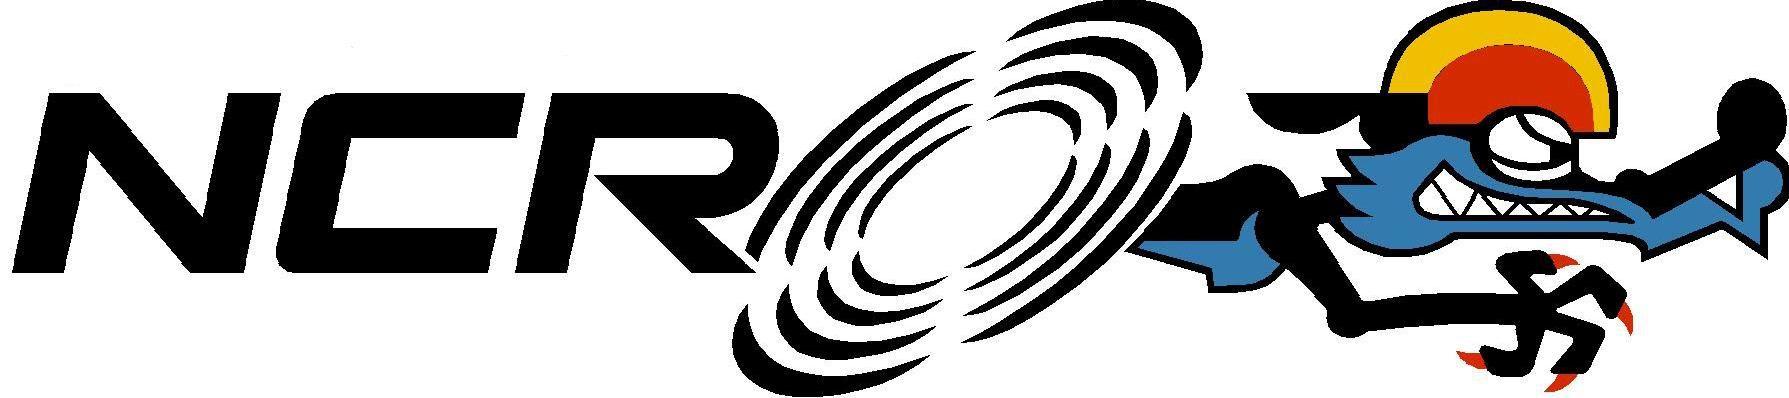 NCR Corporation Logo - Ncr Logos